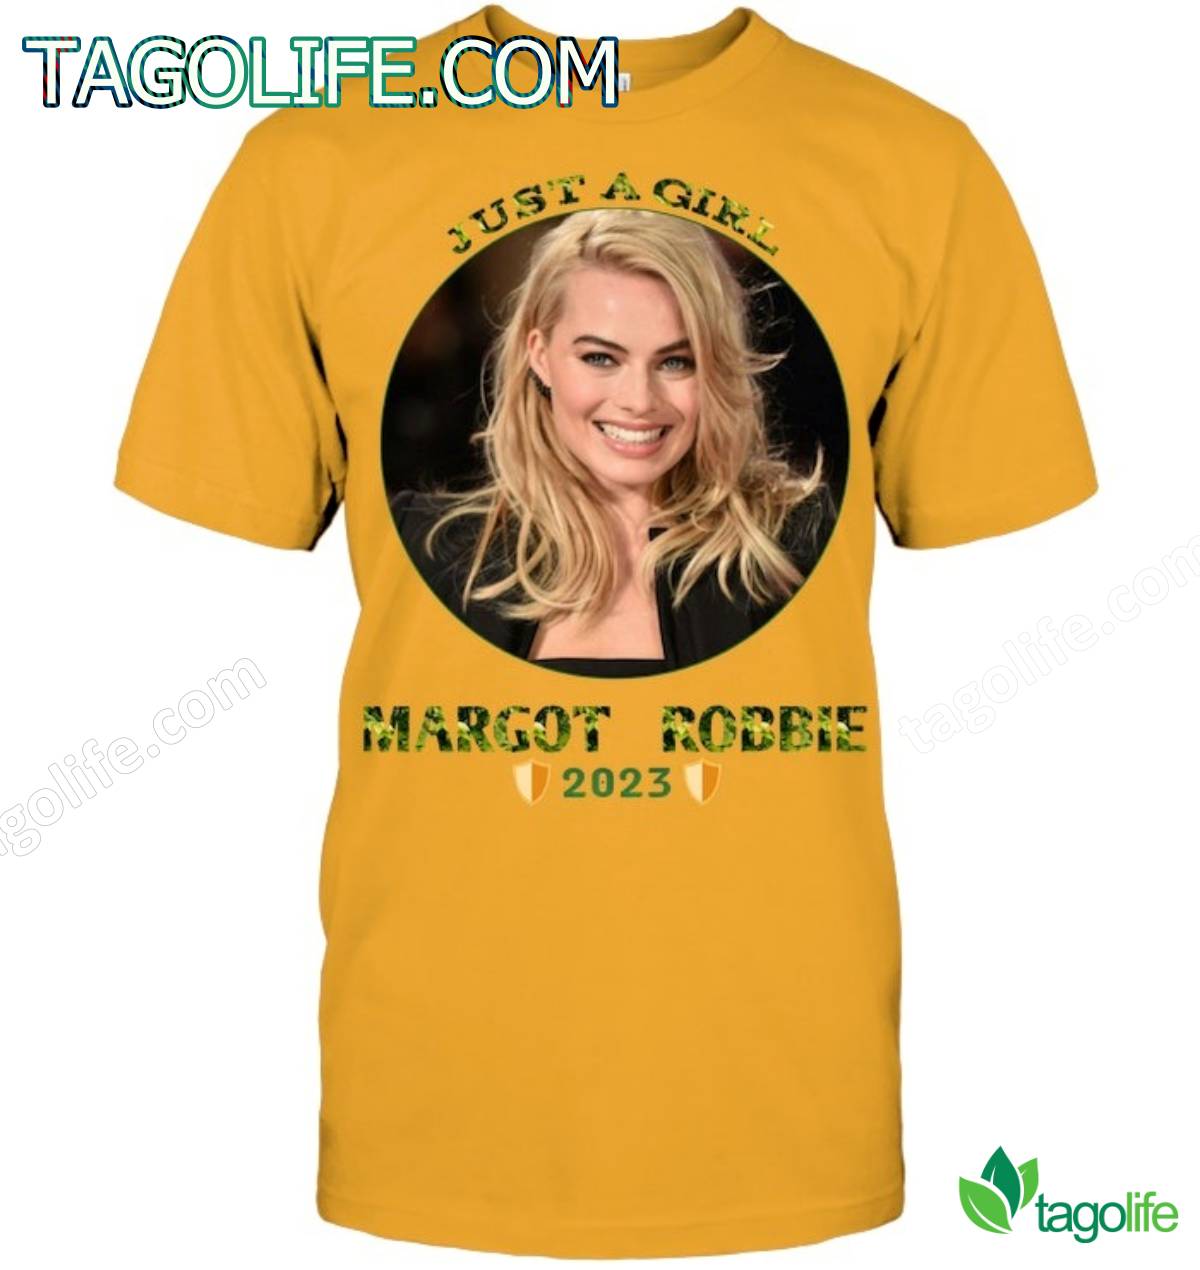 Just A Girl Margot Robbie 2023 Shirt, Tank Top